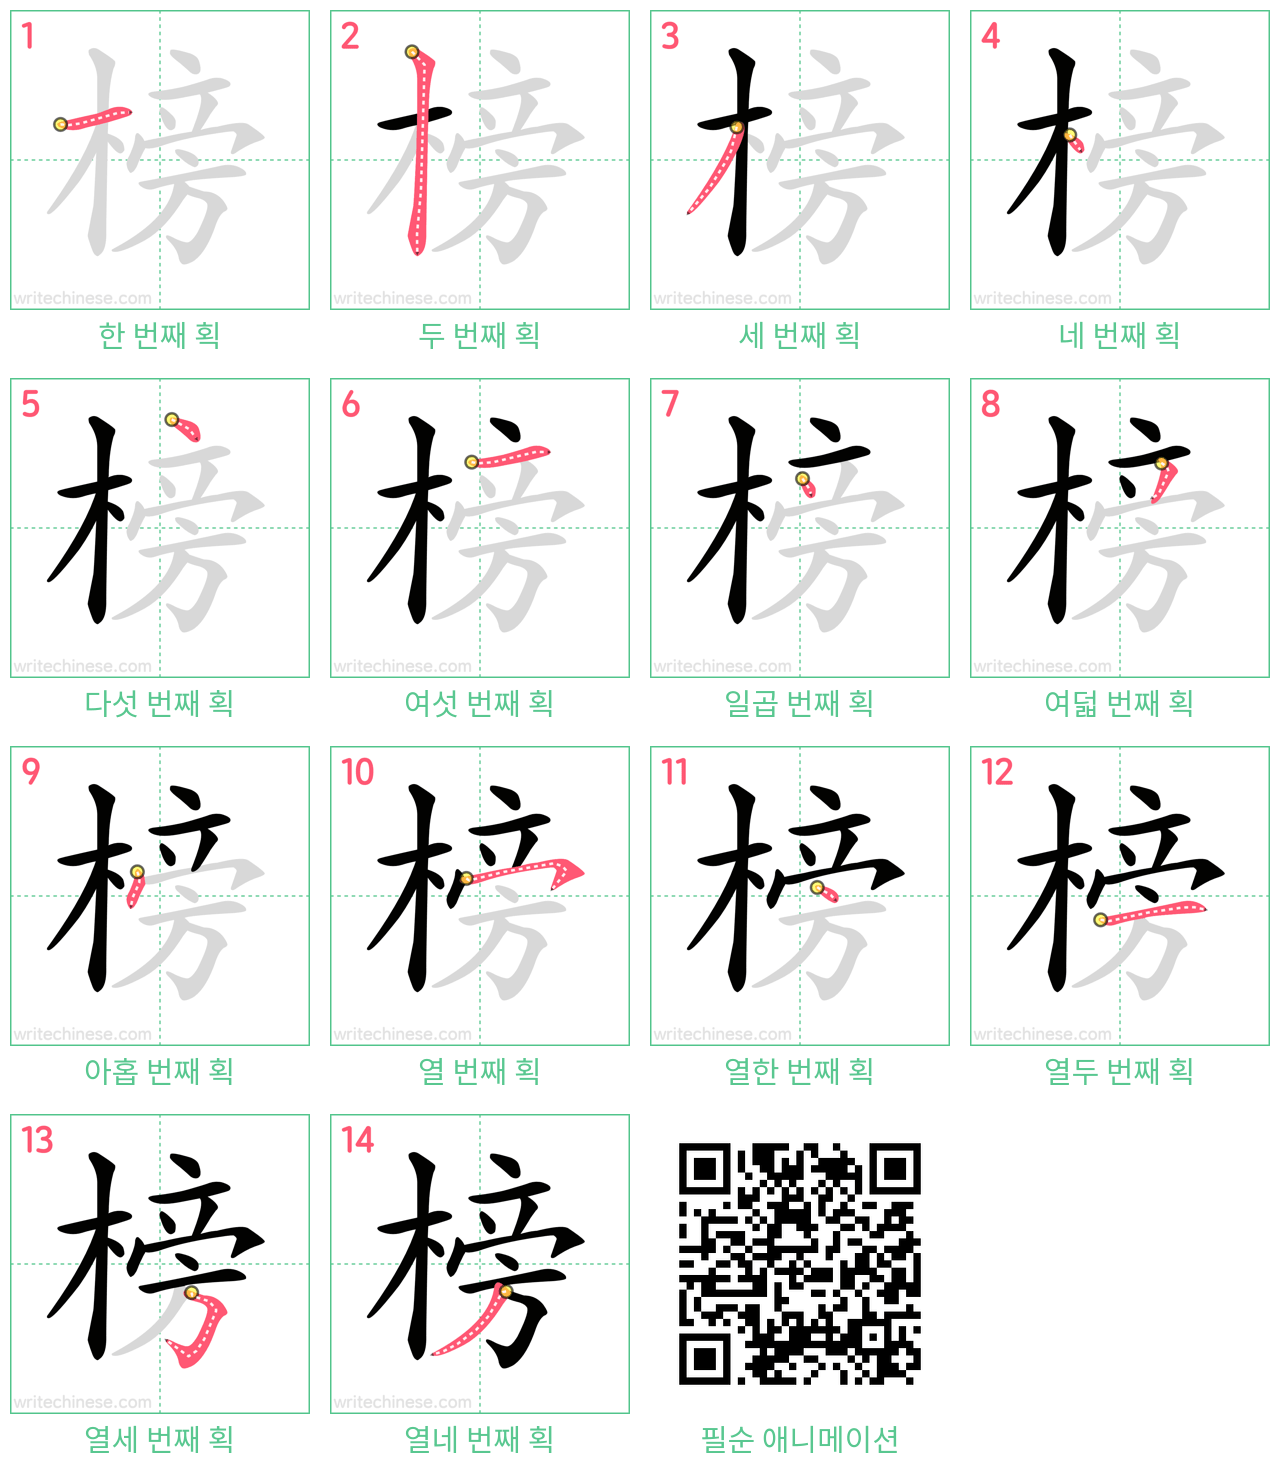 榜 step-by-step stroke order diagrams